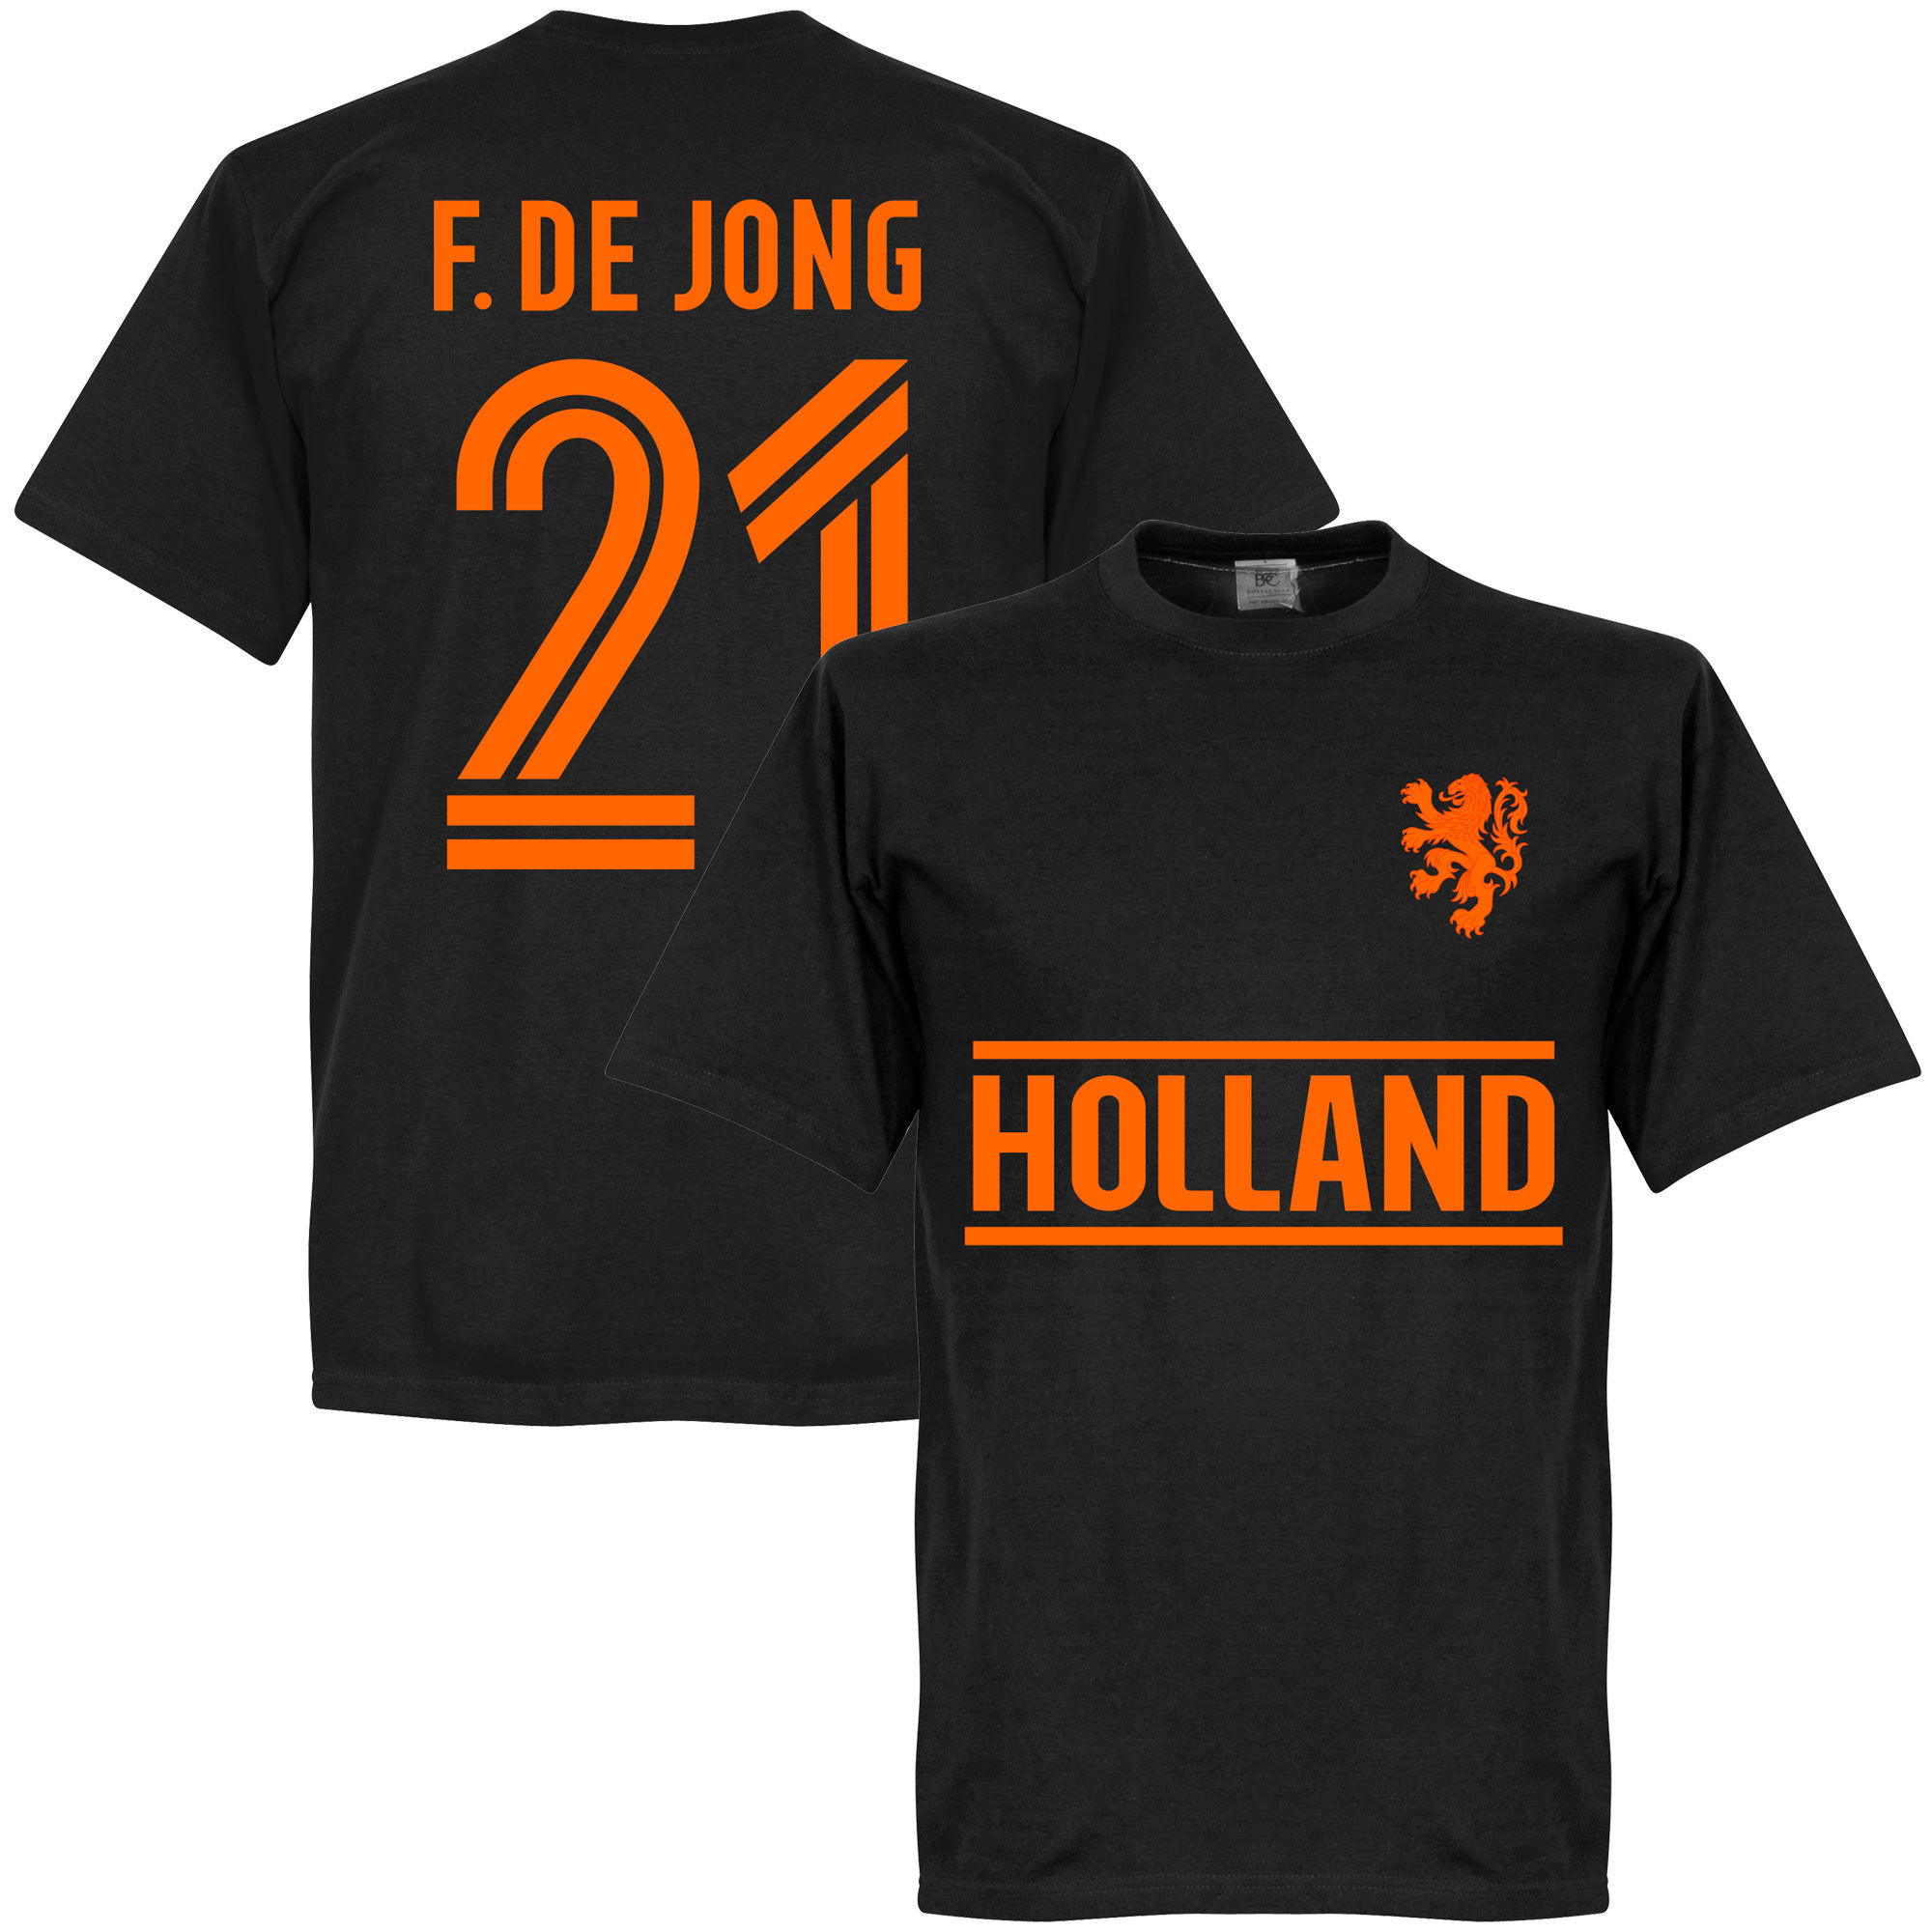 Nizozemí - Tričko - Frenkie de Jong, černé